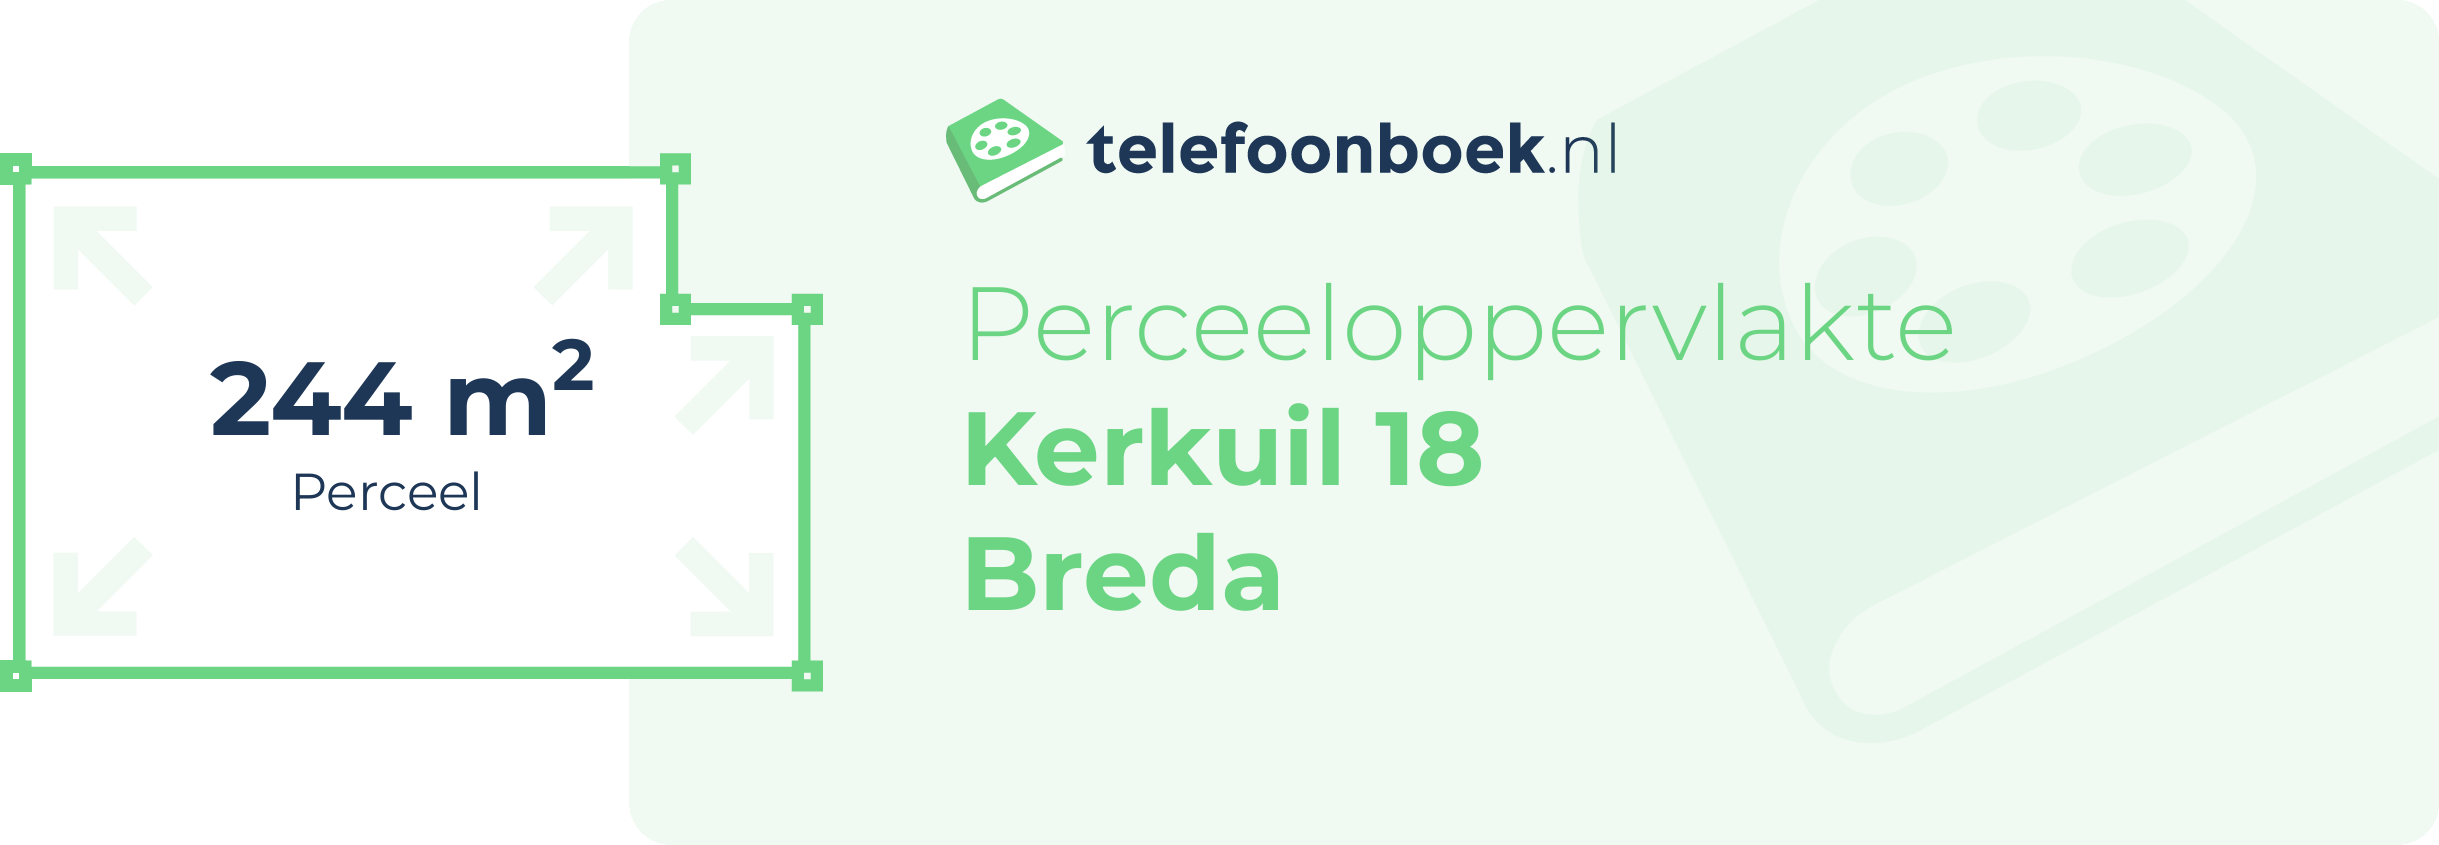 Perceeloppervlakte Kerkuil 18 Breda